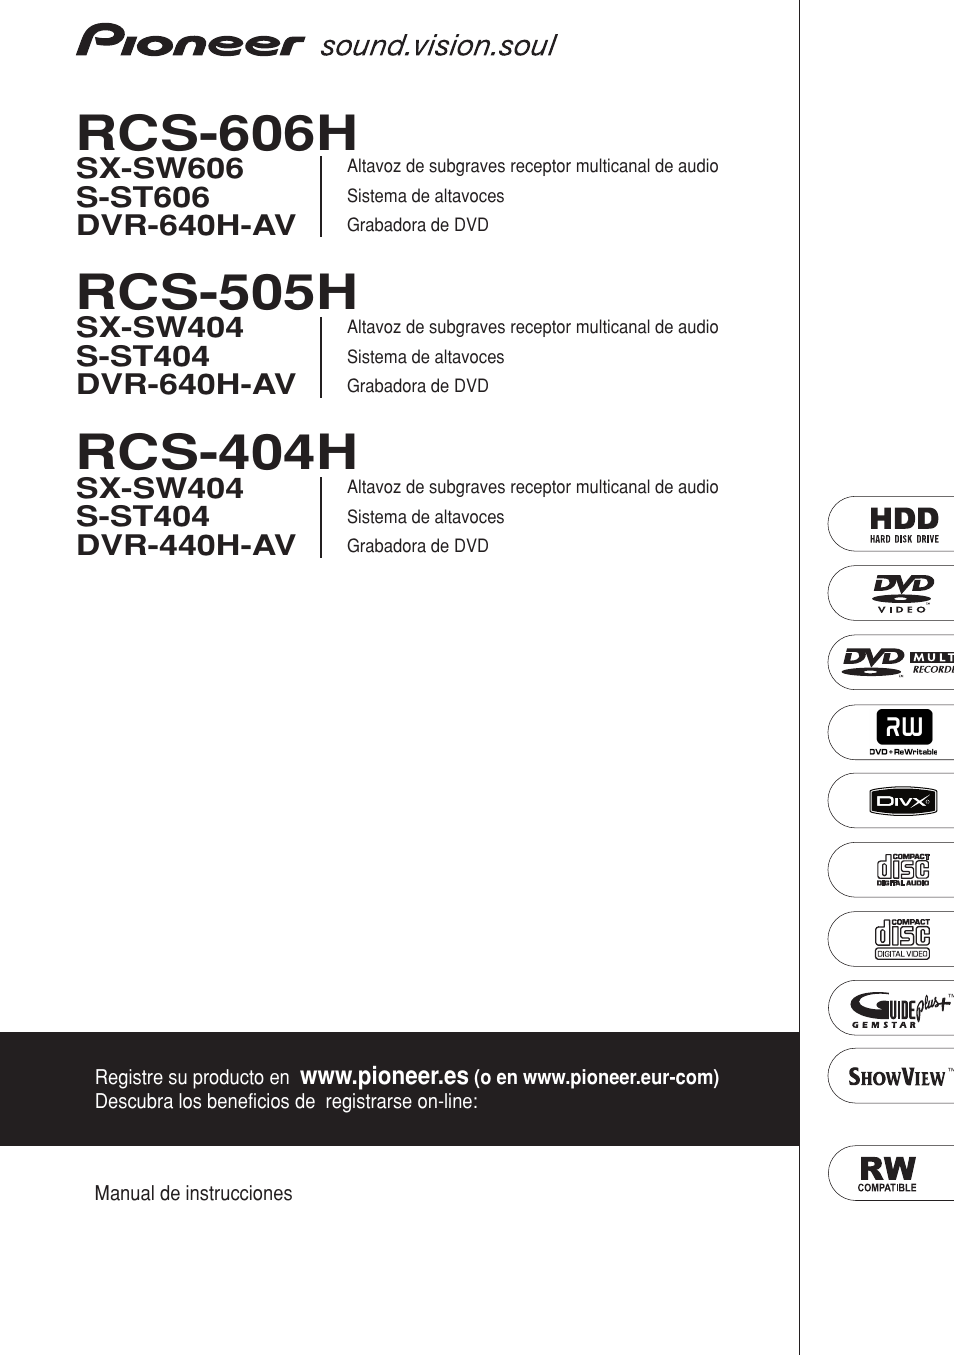 Pioneer RCS-404H Manual del usuario | Páginas: 152